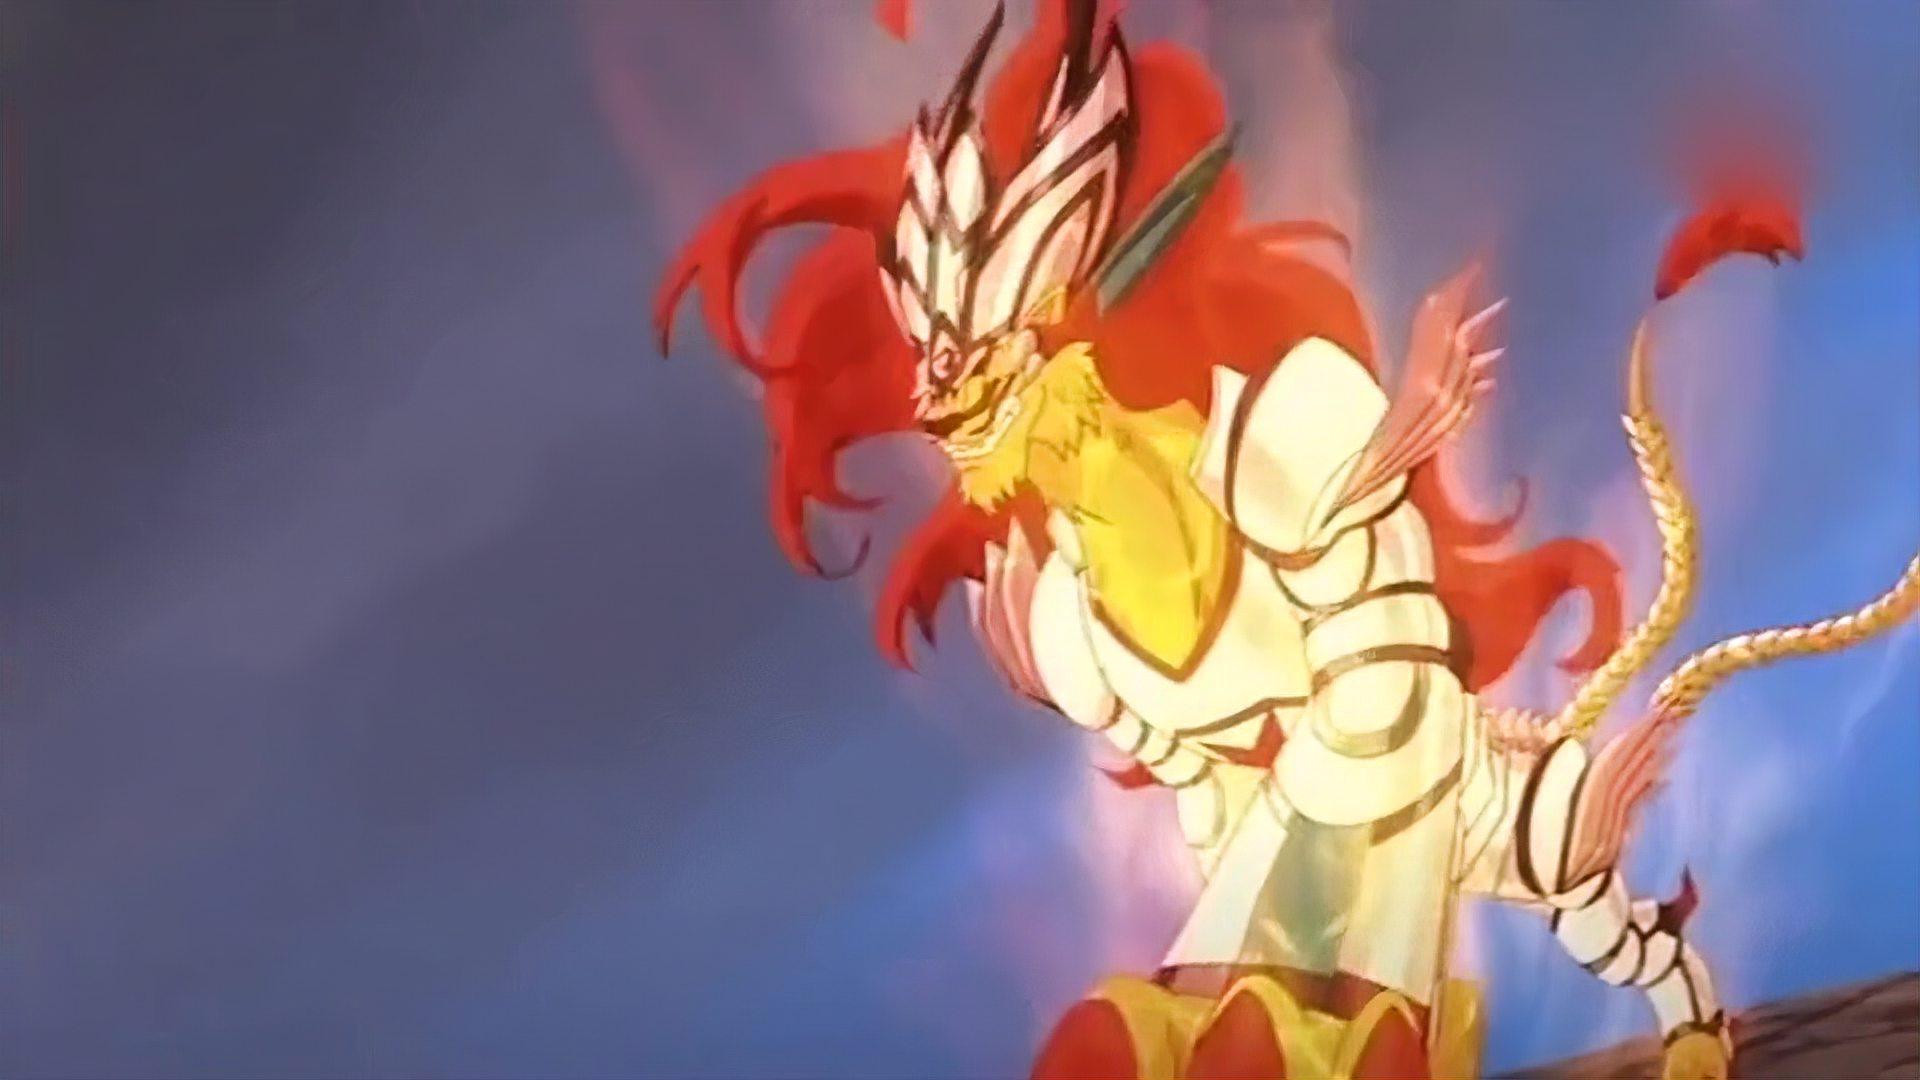 赤焰:赤焰雄狮进化成烈焰狂狮了,比以前更酷,更有型了!